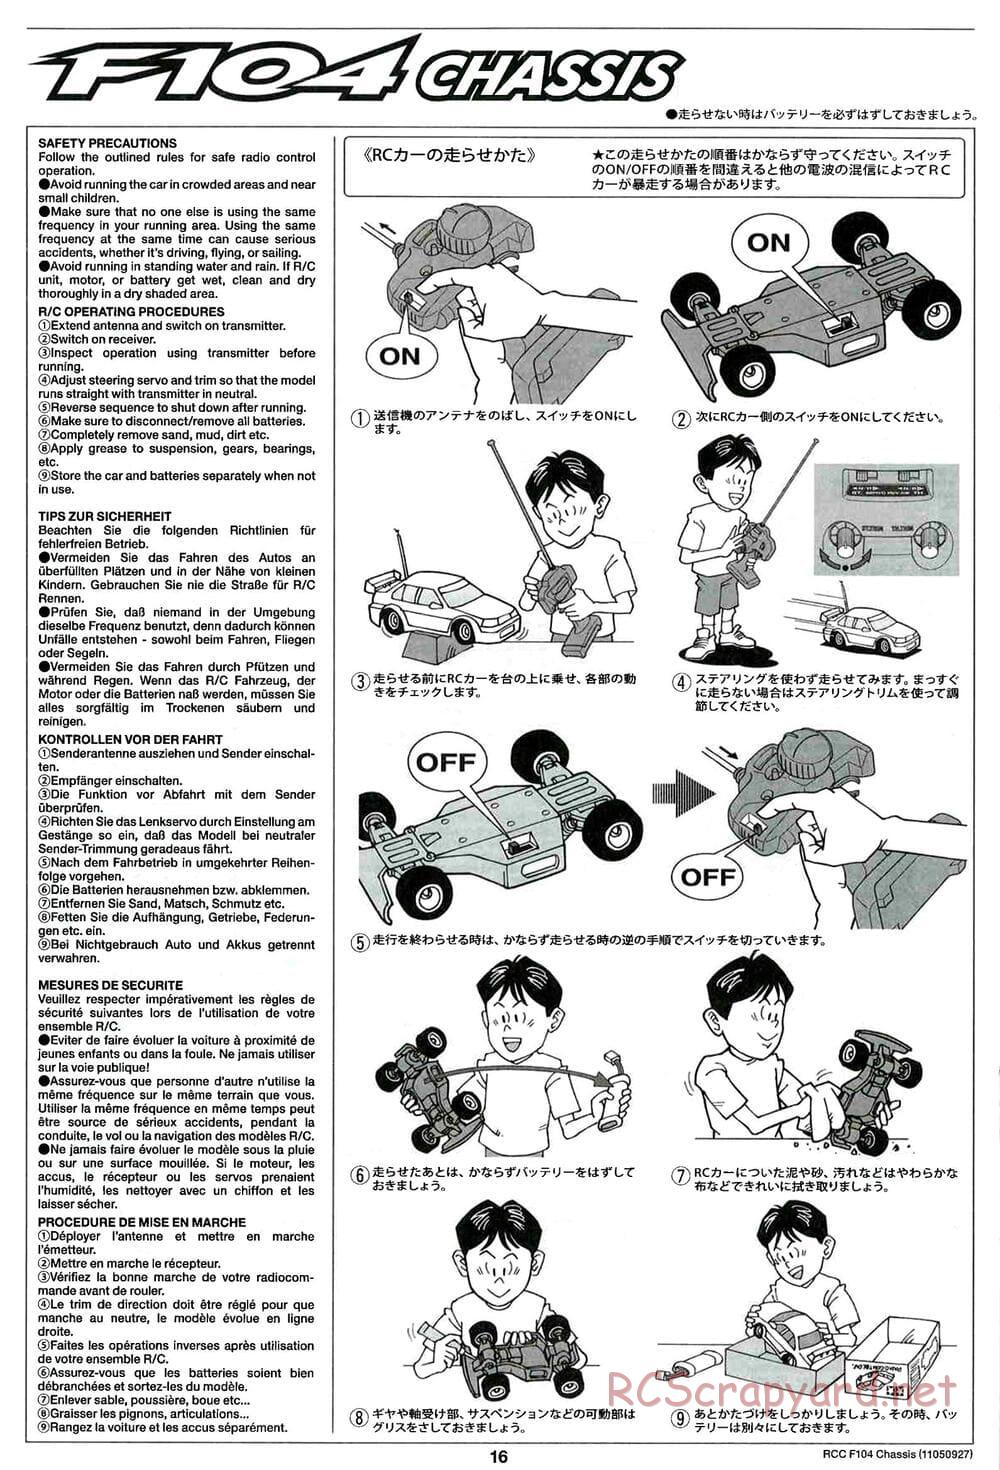 Tamiya - F104 Chassis - Manual - Page 16